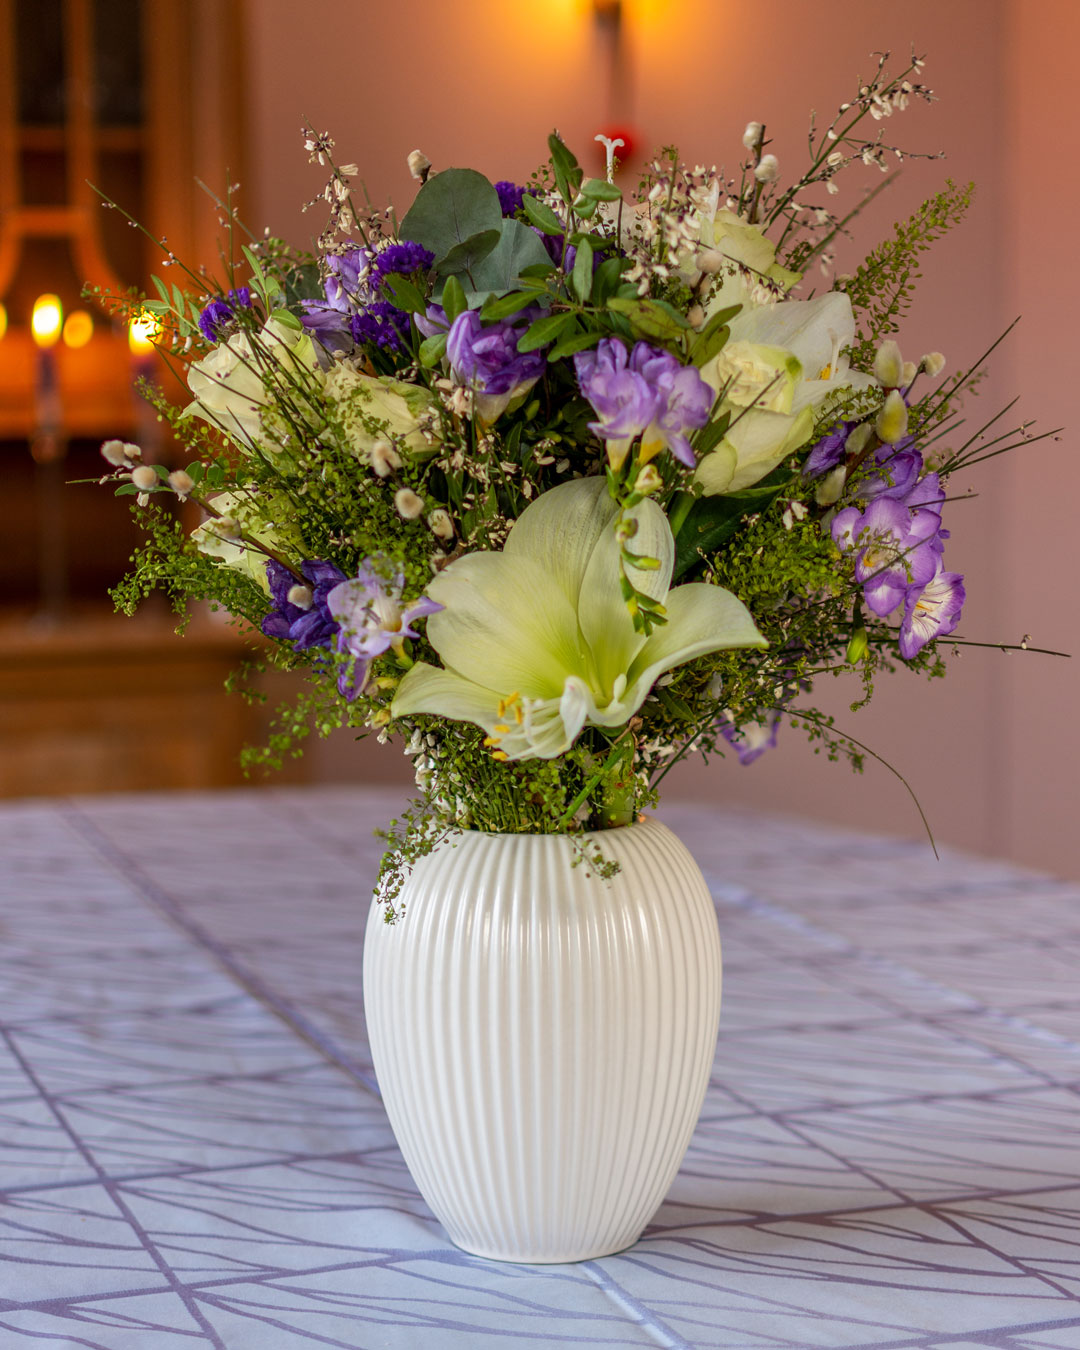 Hvid vase med blomsterbuket af hvide liljer og lilla blomster på lyseblå dug